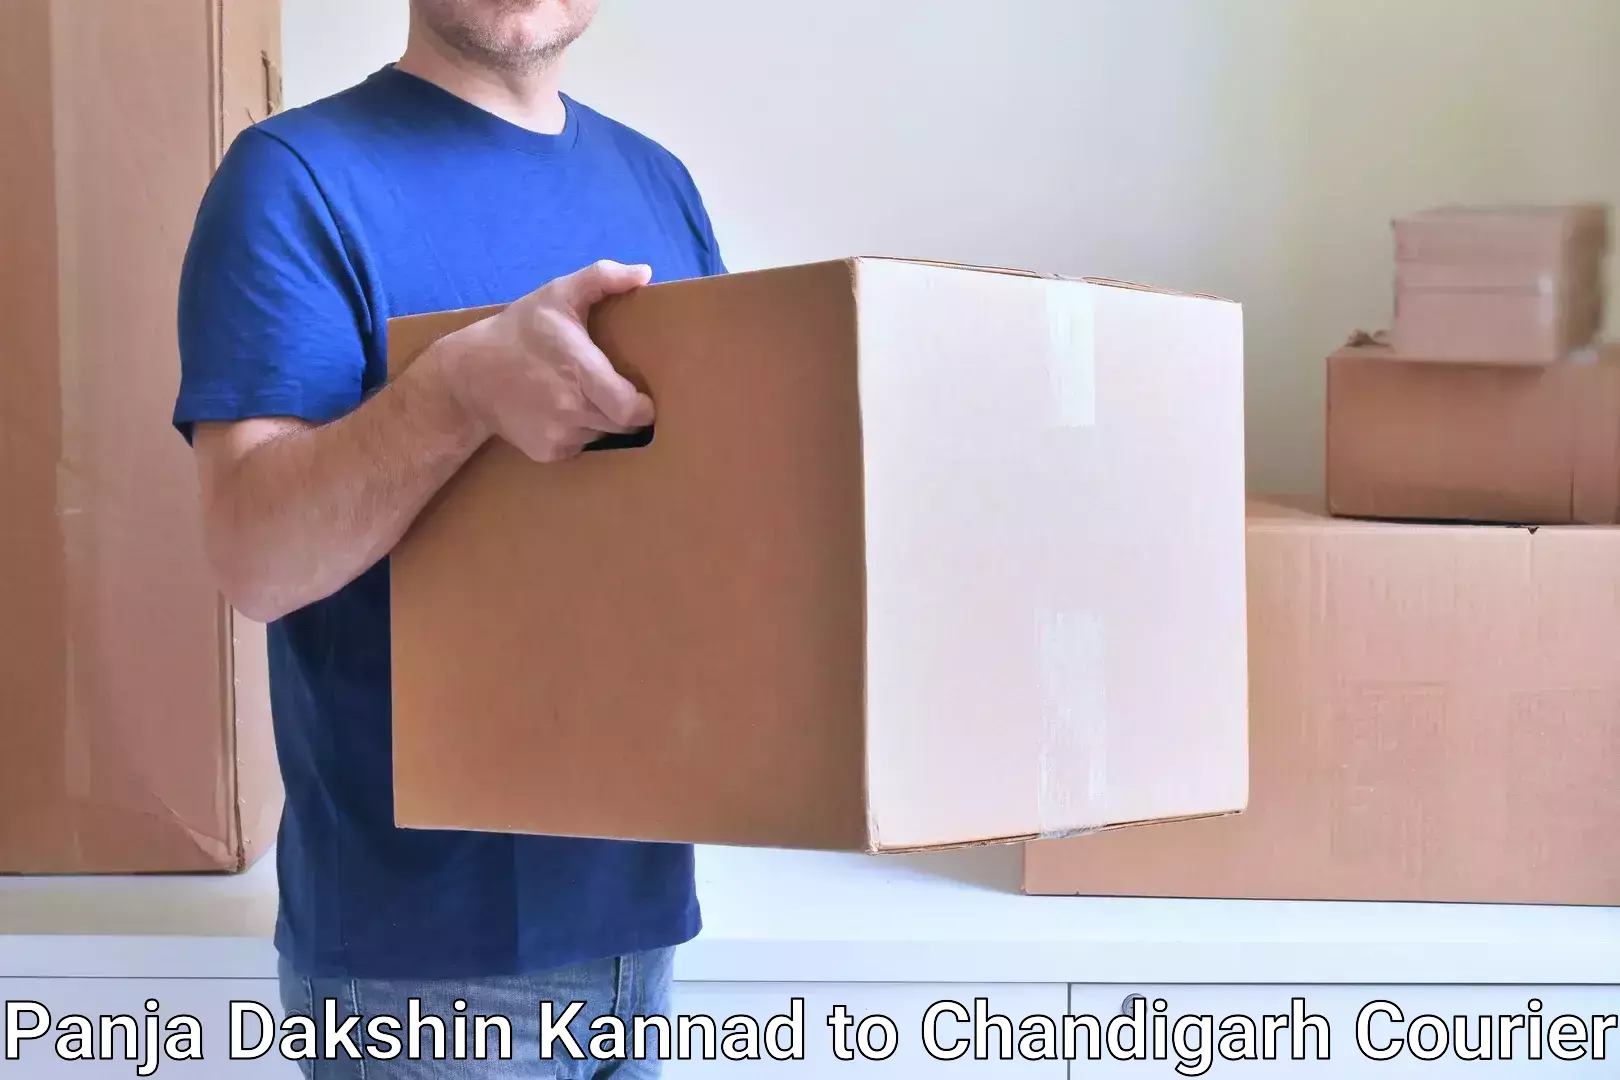 High-capacity parcel service Panja Dakshin Kannad to Kharar